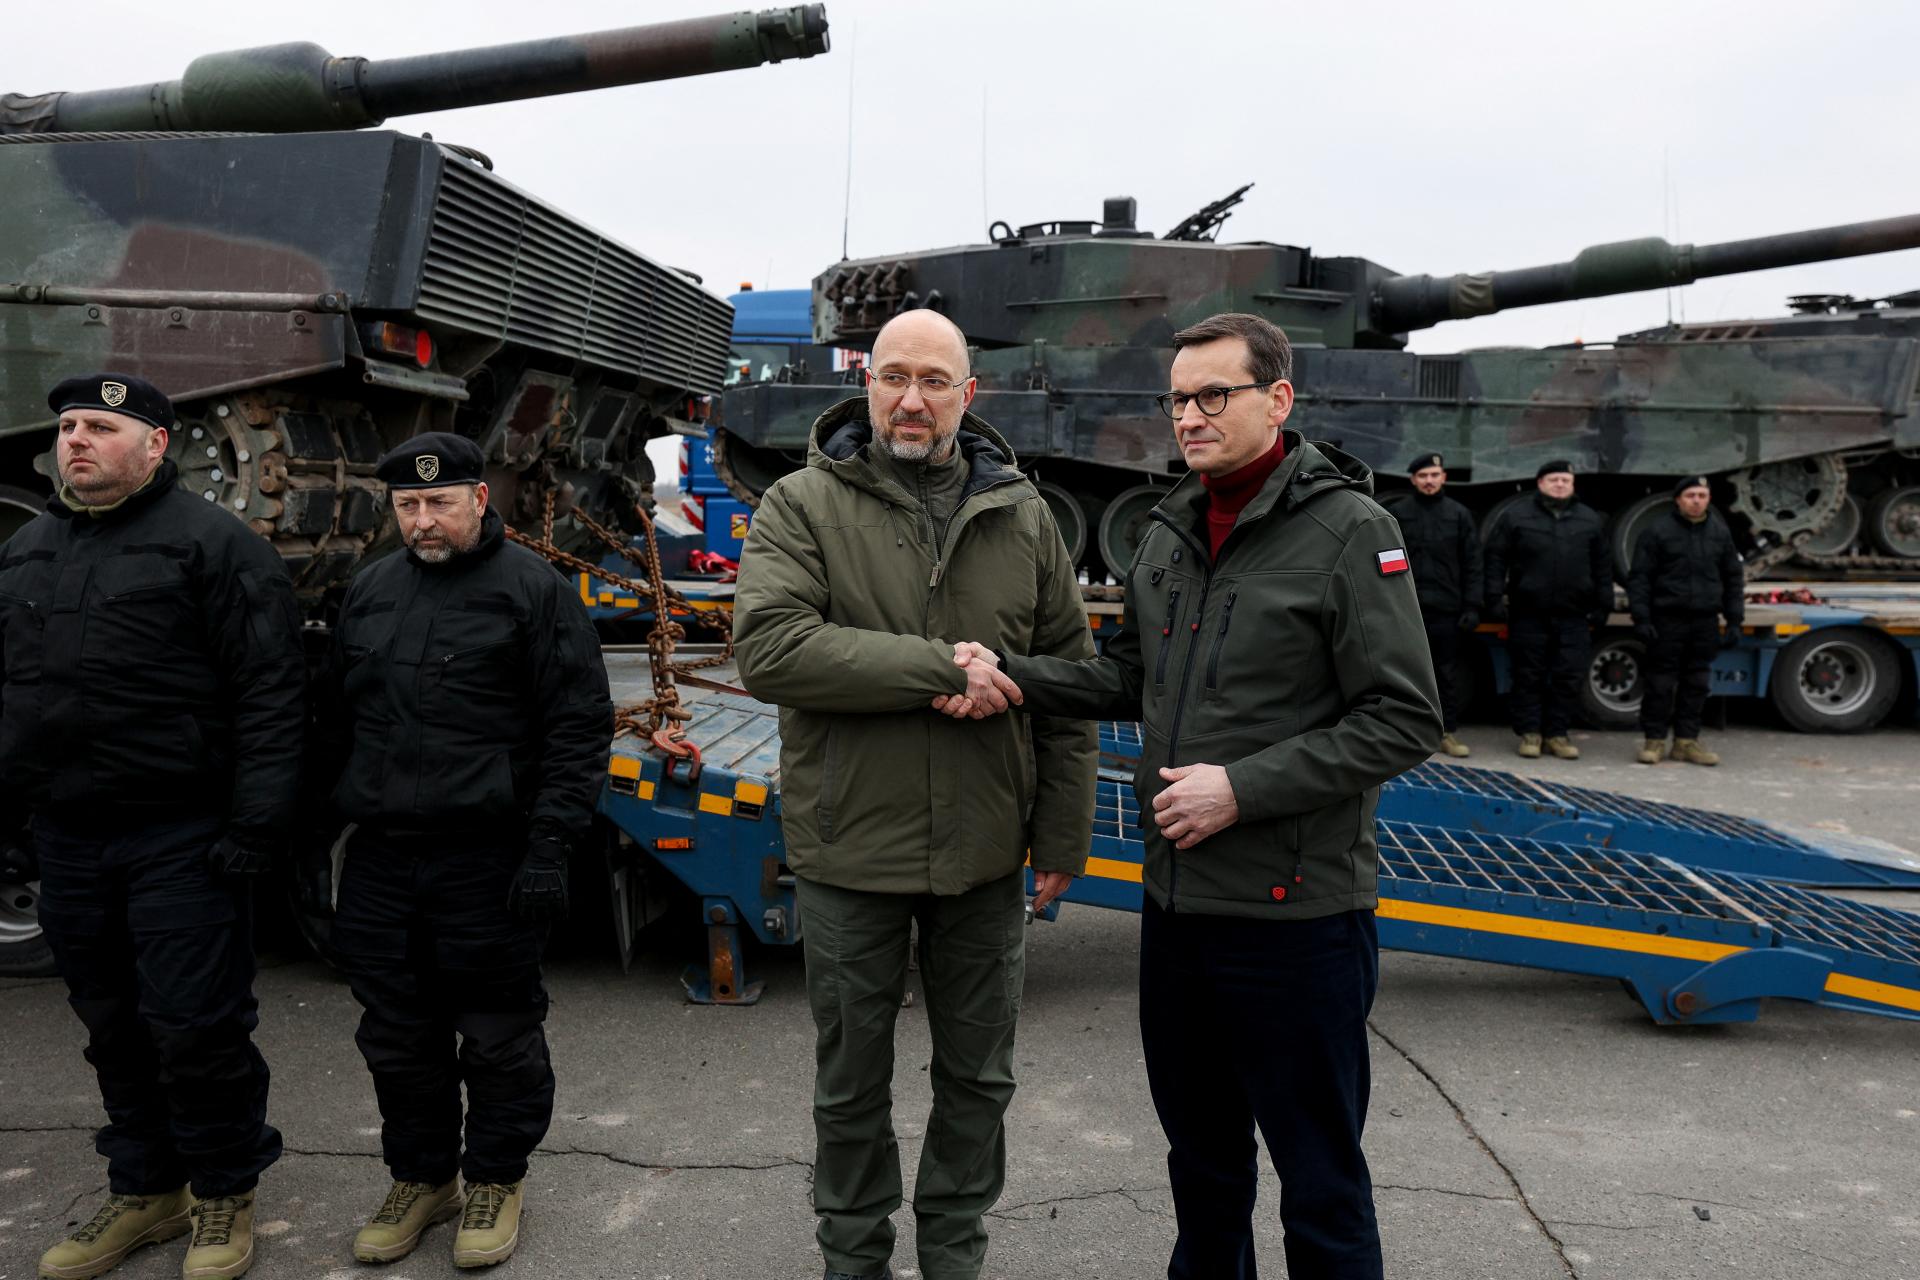 Poľsko dodá Ukrajine ďalšie tanky pravdepodobne v priebehu niekoľkých dní, povedal diplomat